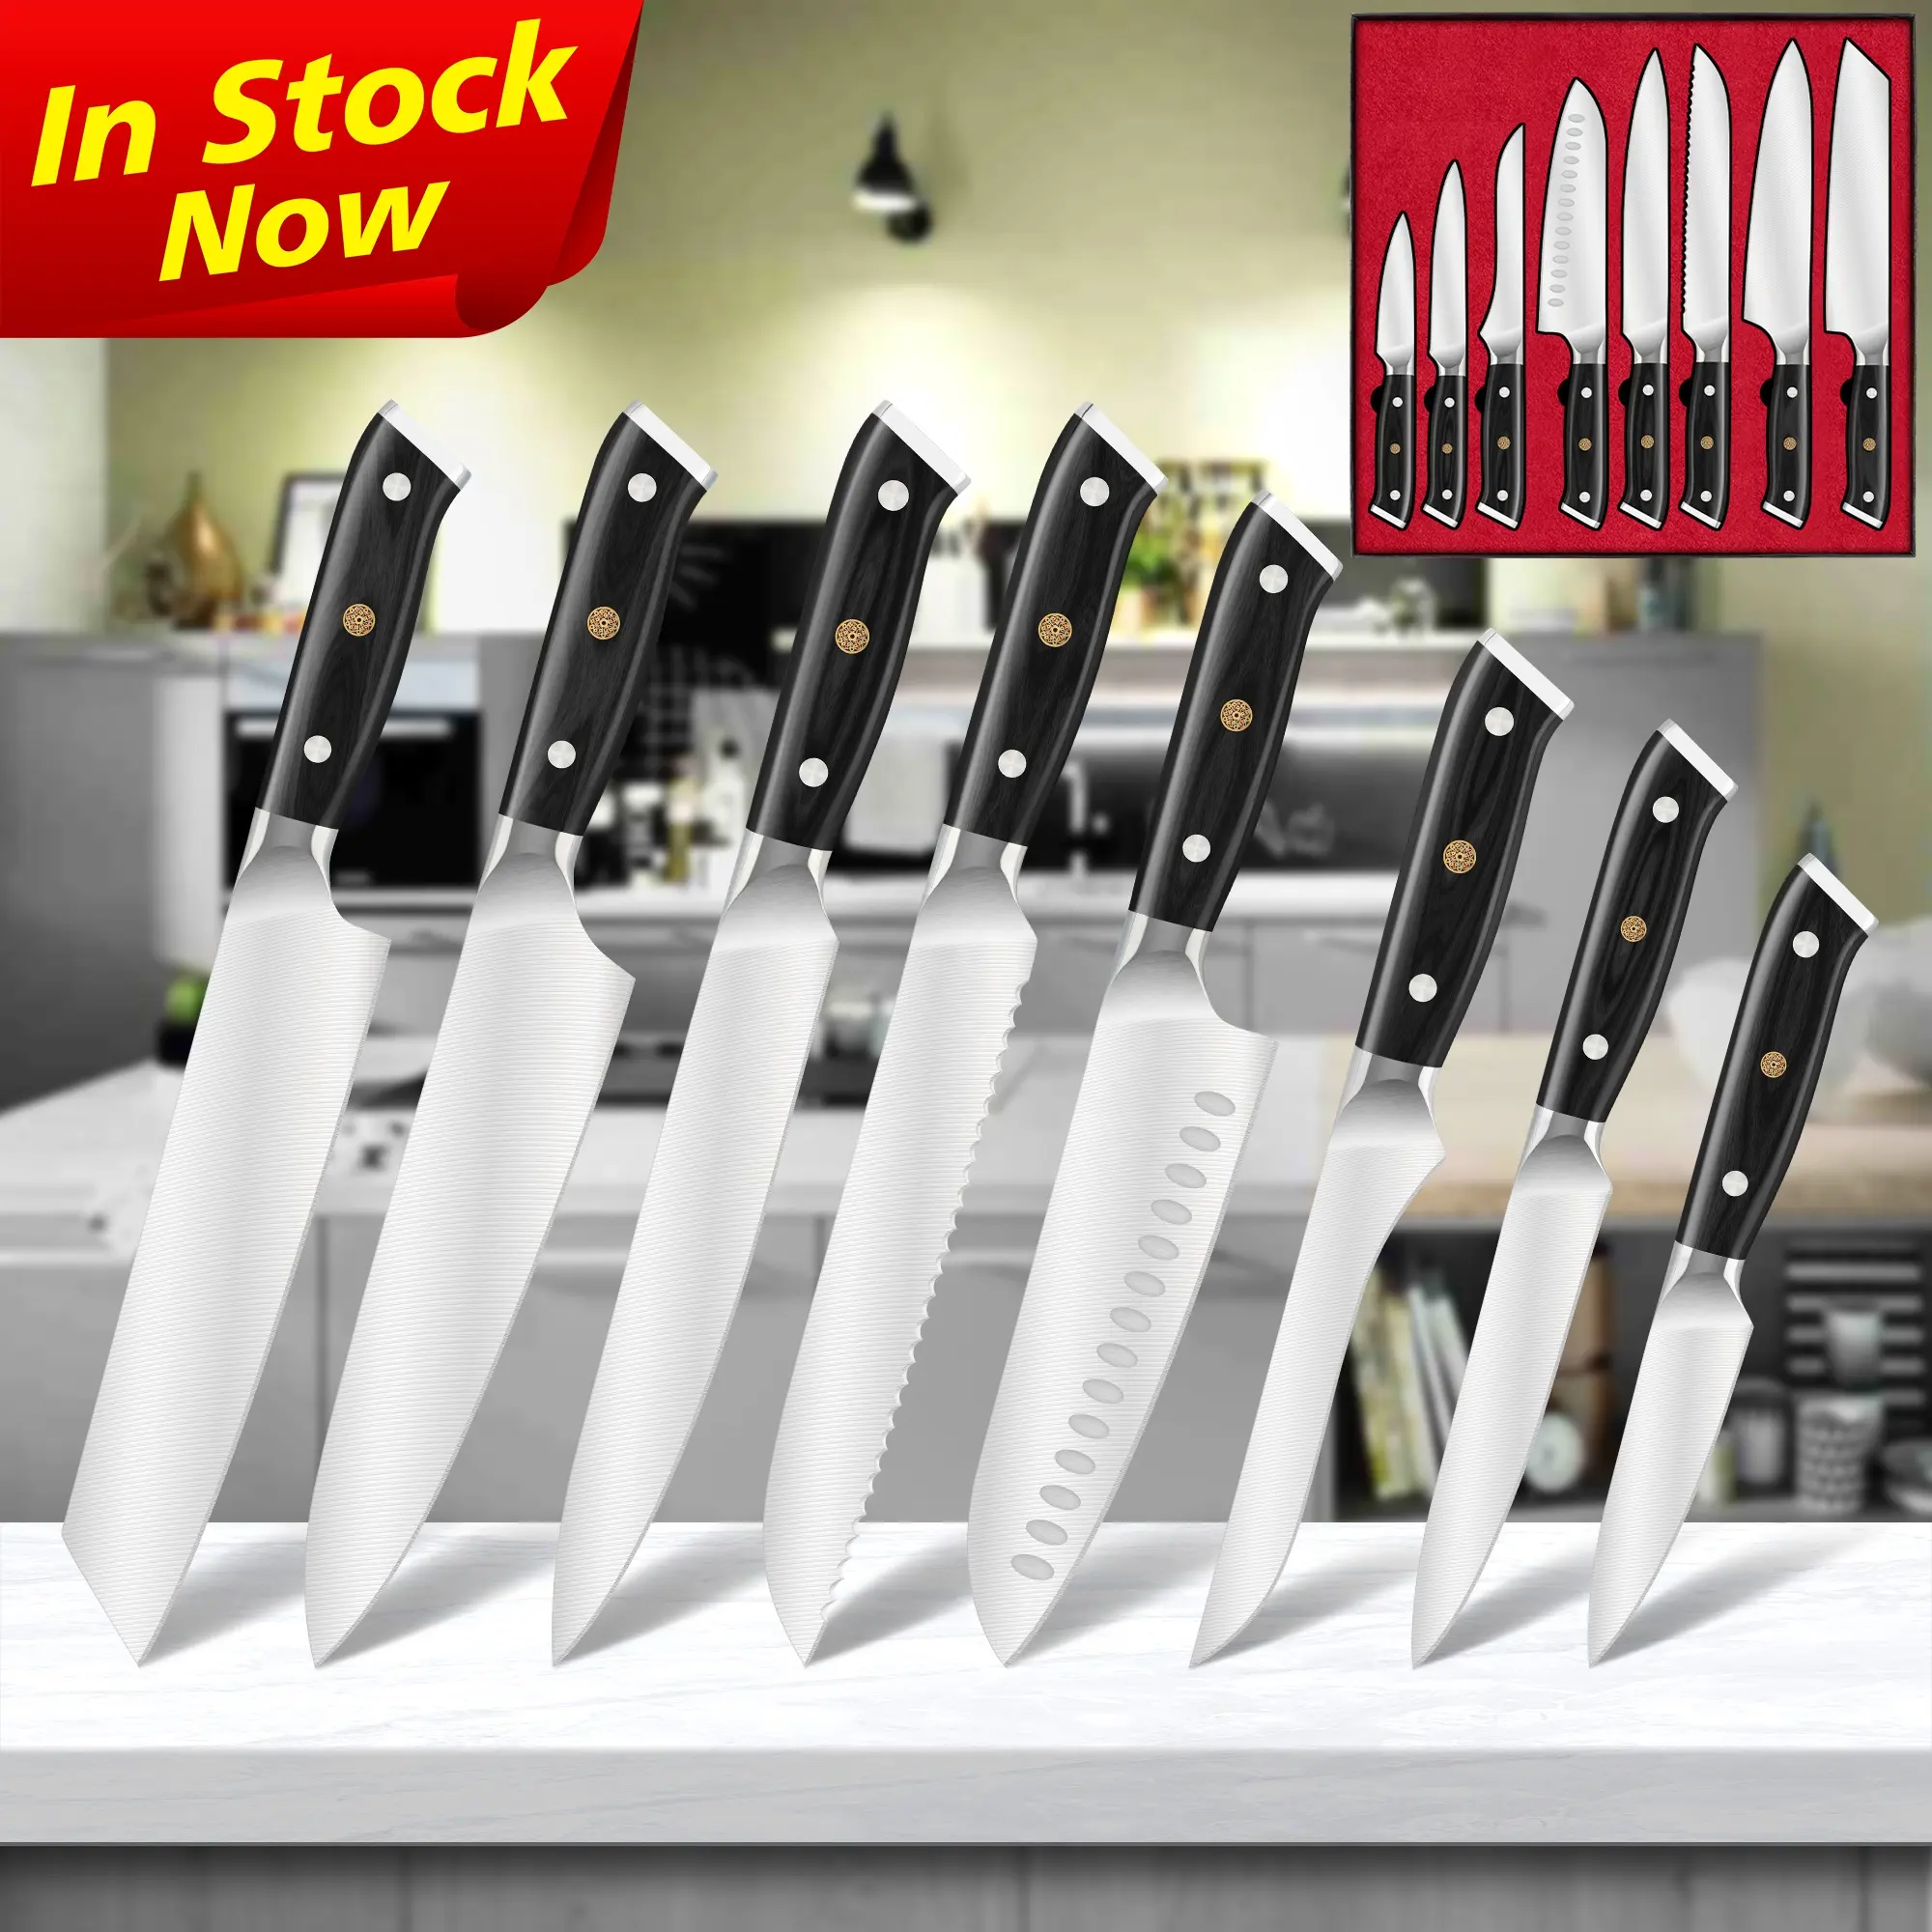 Canivete de cozinha profissional preto Pakka com cabo de madeira Full-Tang 1.4116 em aço alemão Conjunto com garantia vitalícia